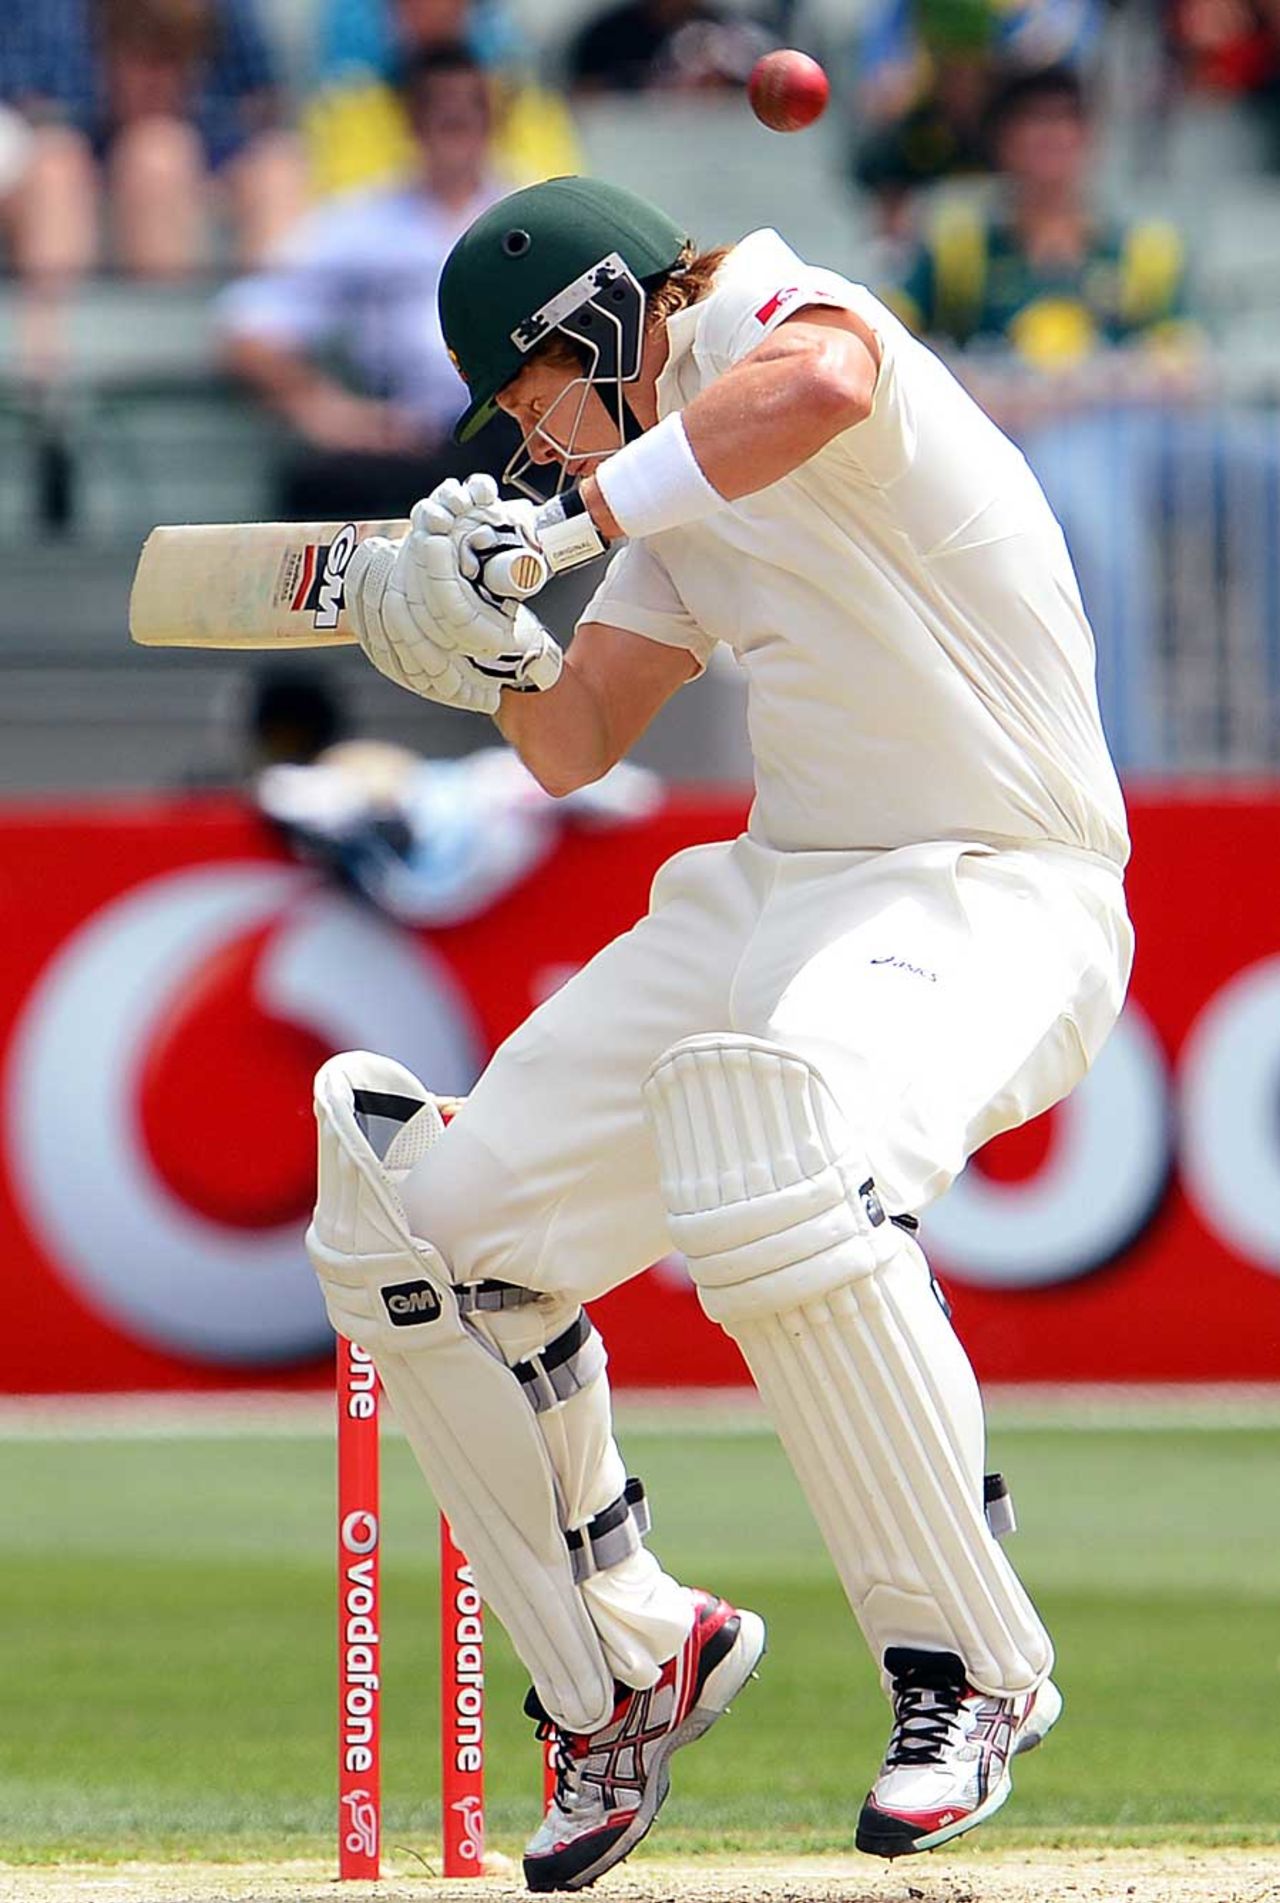 Shane Watson ducks under a short ball, Australia v Sri Lanka, 2nd Test, Melbourne, 2nd day, December 27, 2012